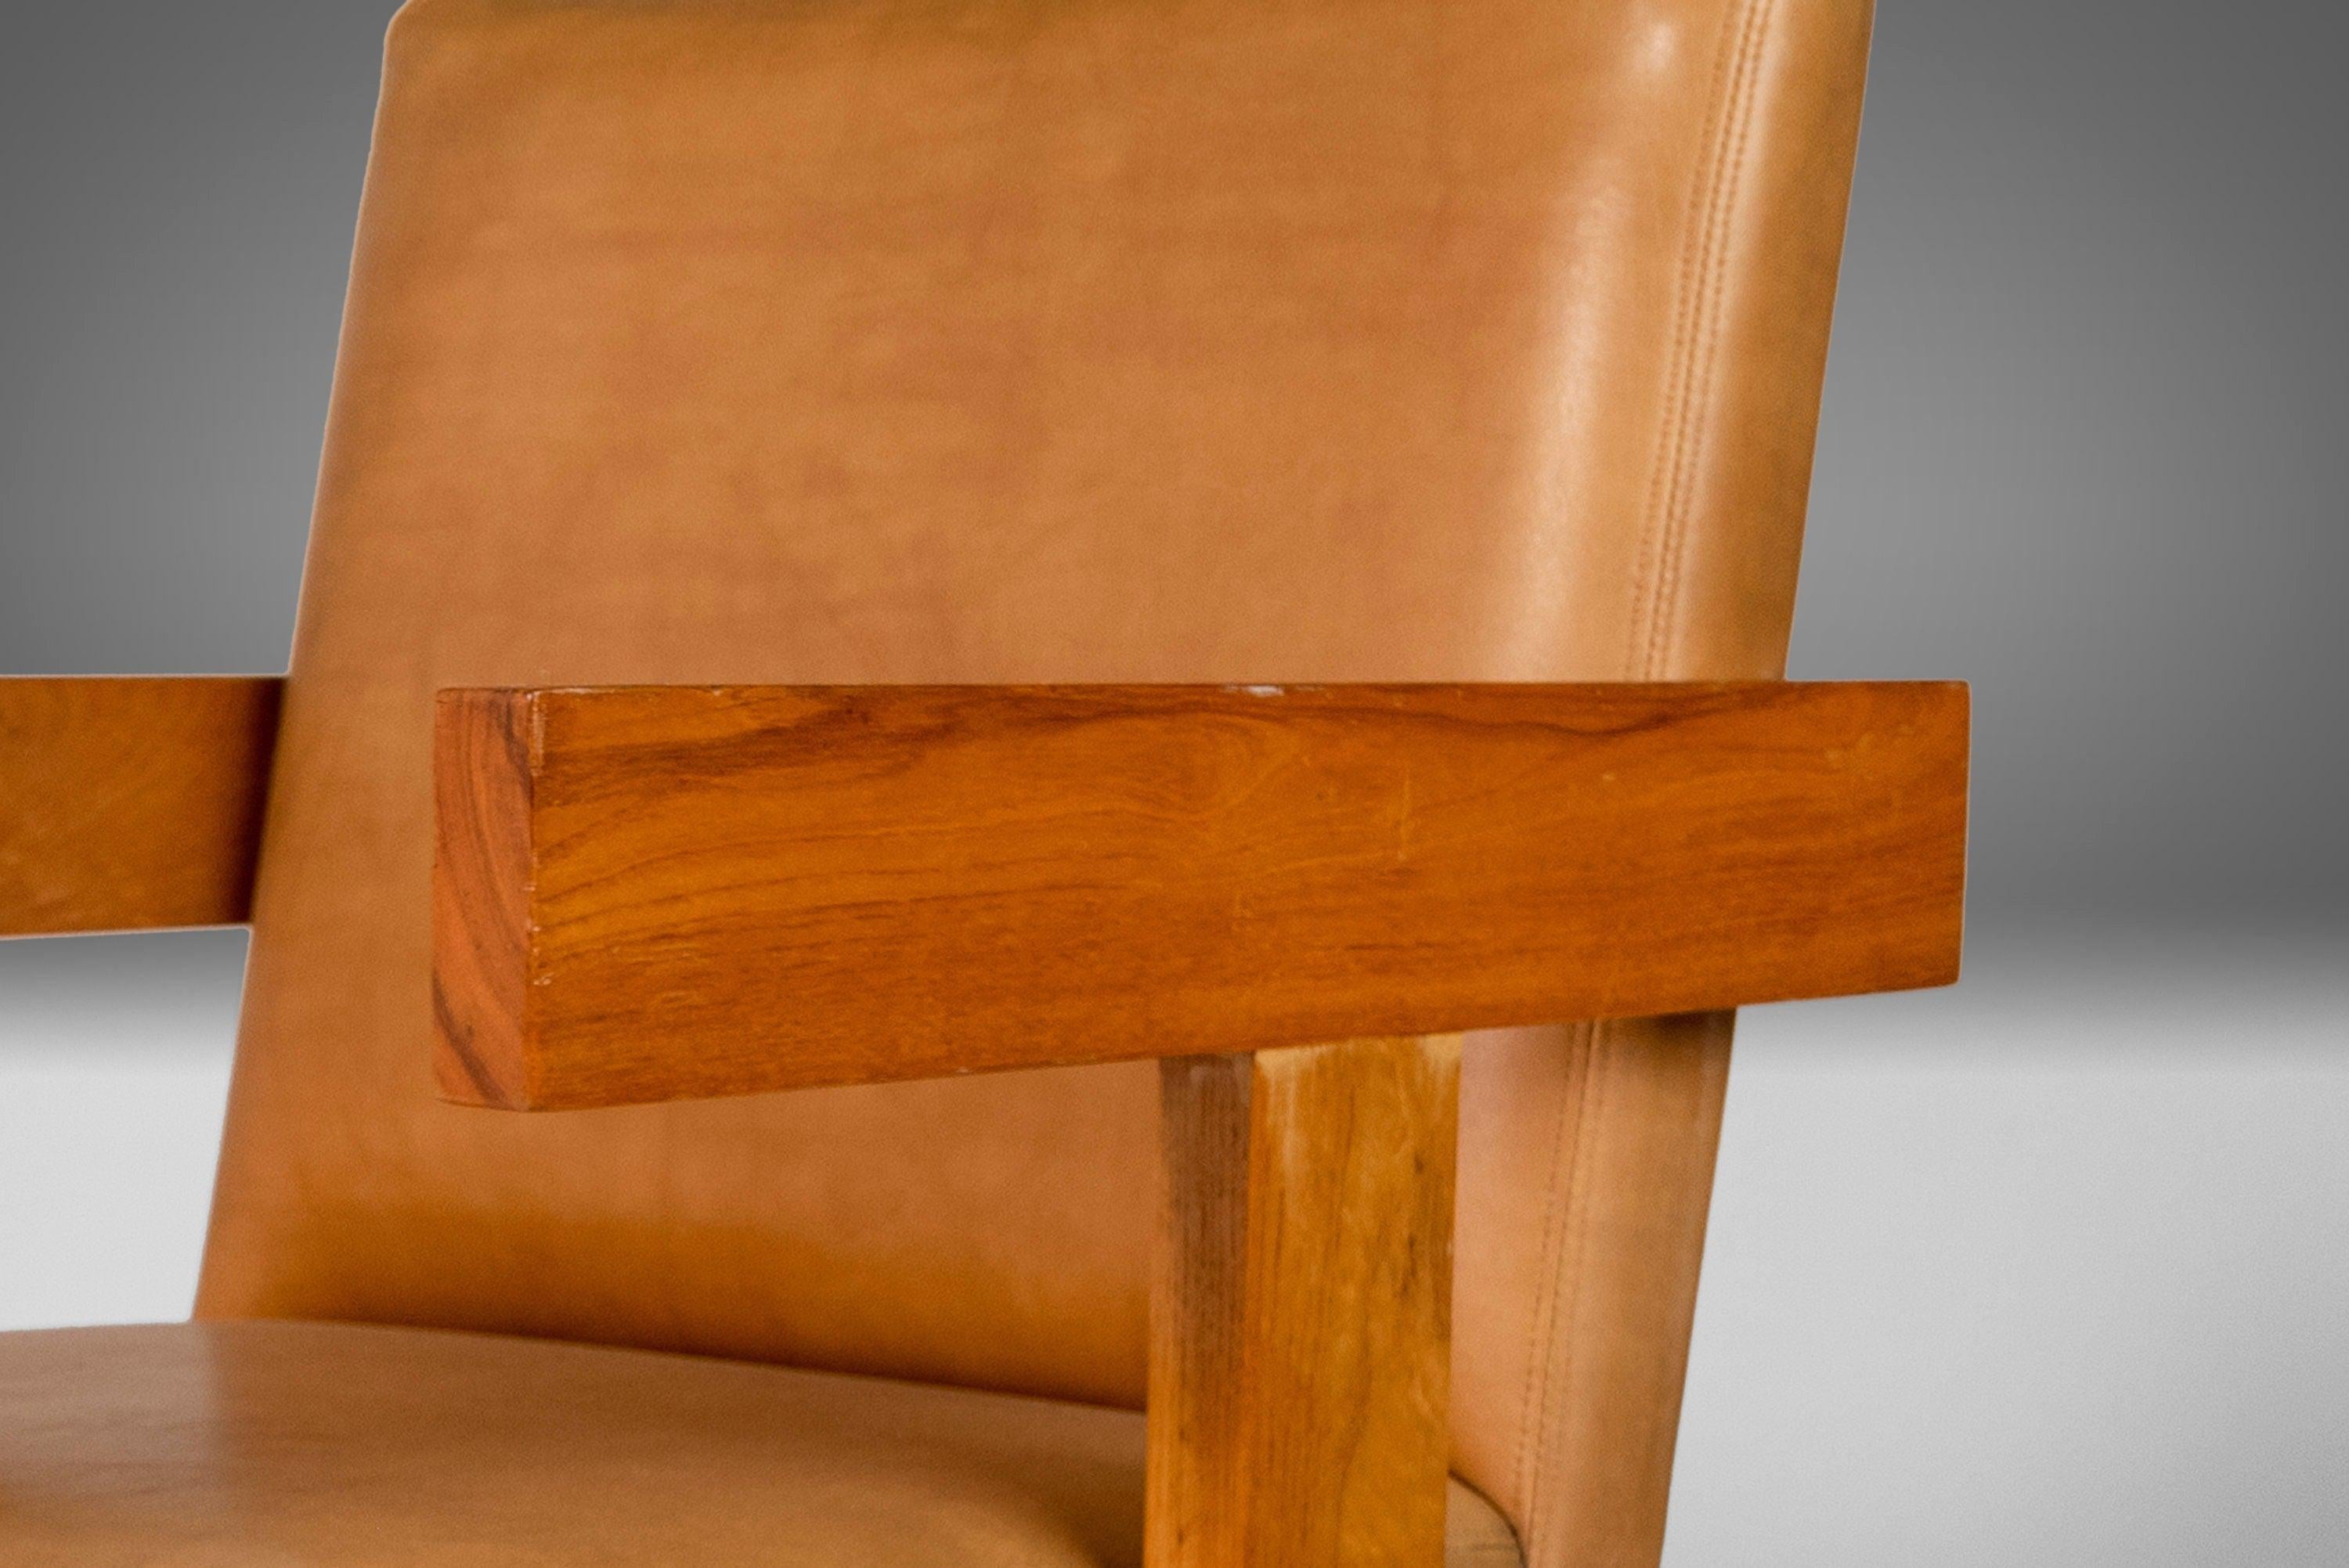 Un ensemble solide et substantiel de 2 chaises de salle à manger d'après Jens Risom. Construit en chêne avec les sièges en vinyle d'origine.

Largeur : 21.5 in / 54.61 cm
Profondeur : 23 in / 58.42 cm
Hauteur : 32.75 in / 83.19 cm
Hauteur du siège :